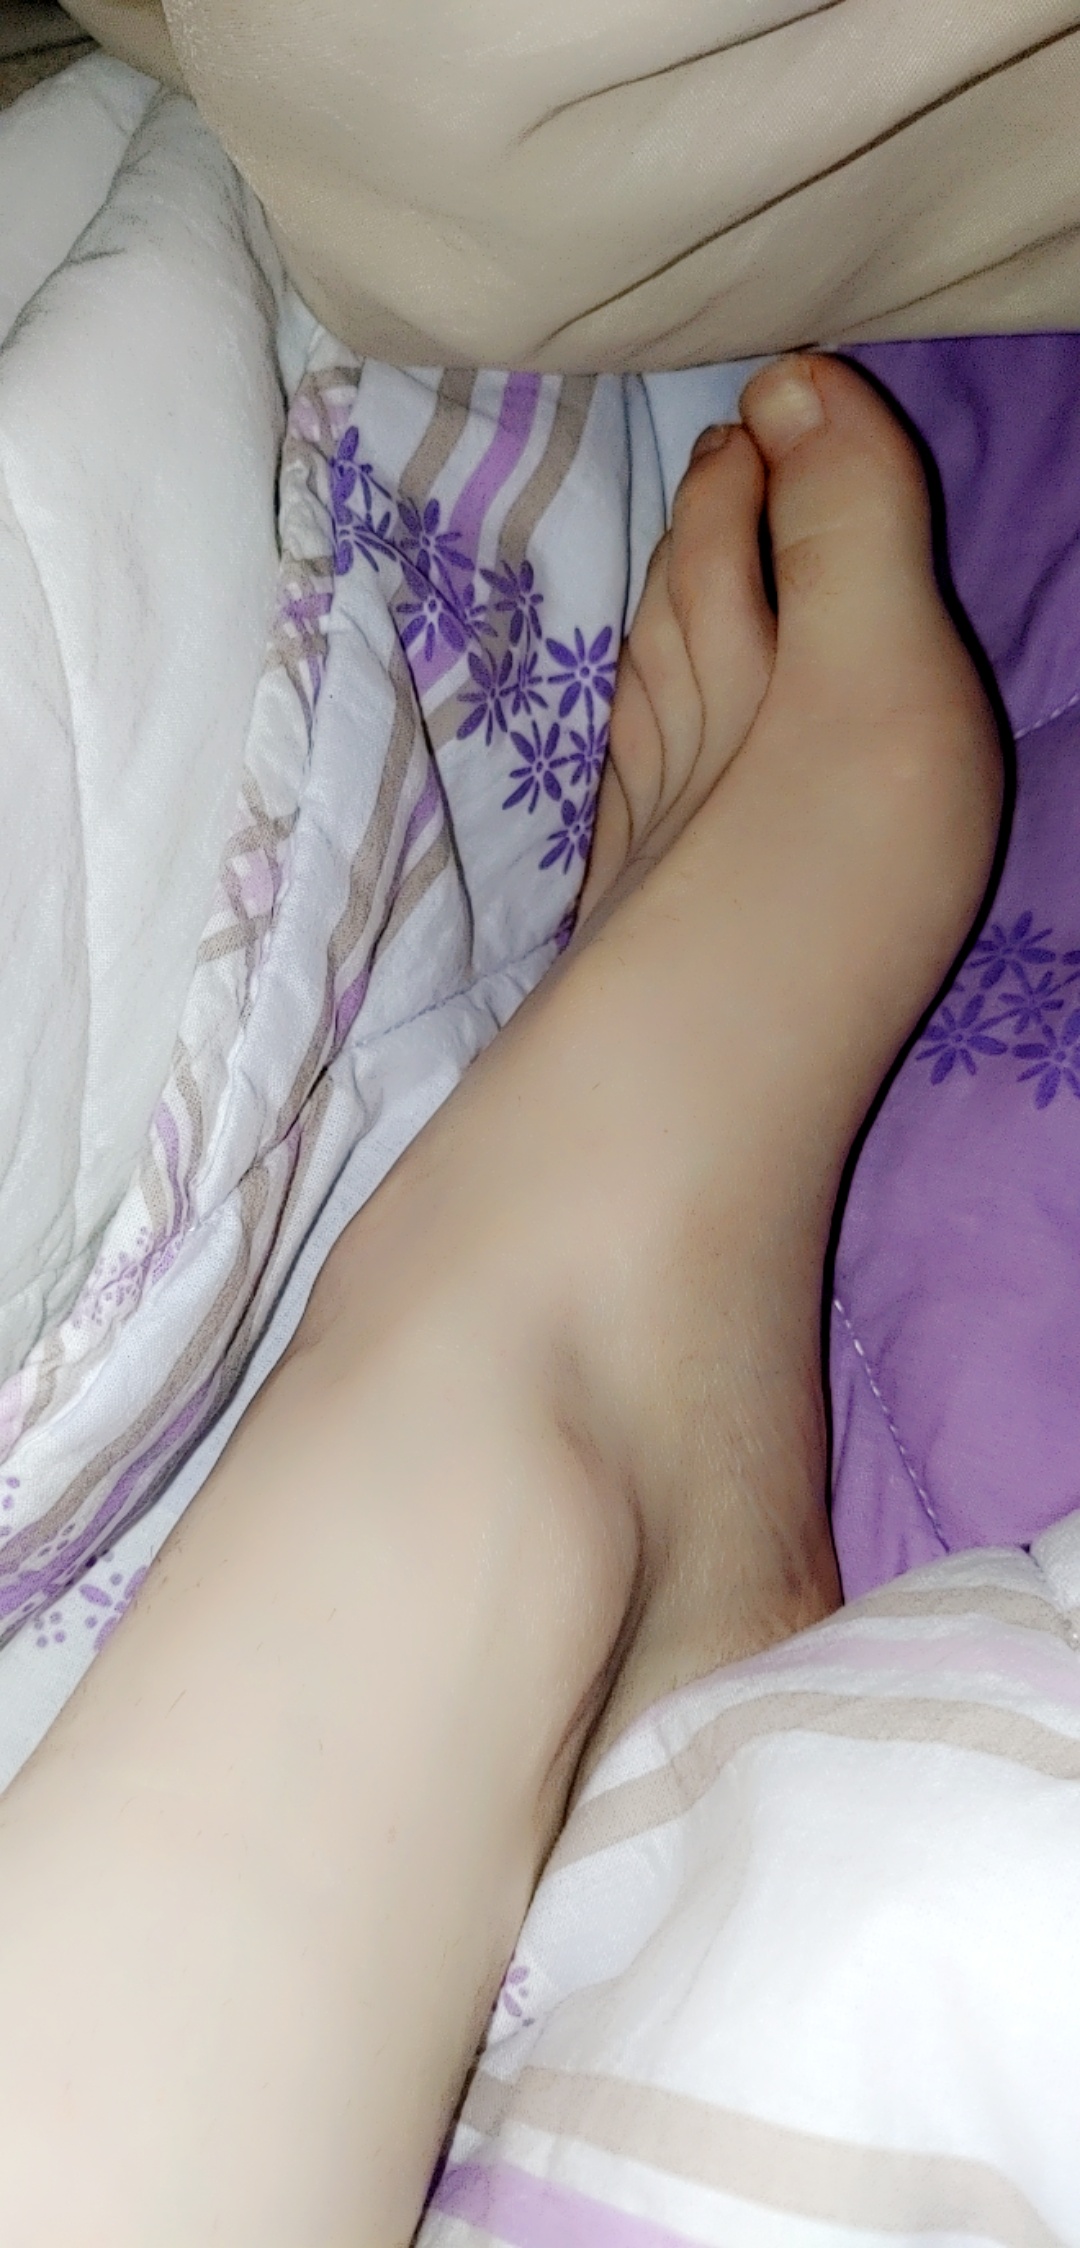 My feet sexy ❤❤❤